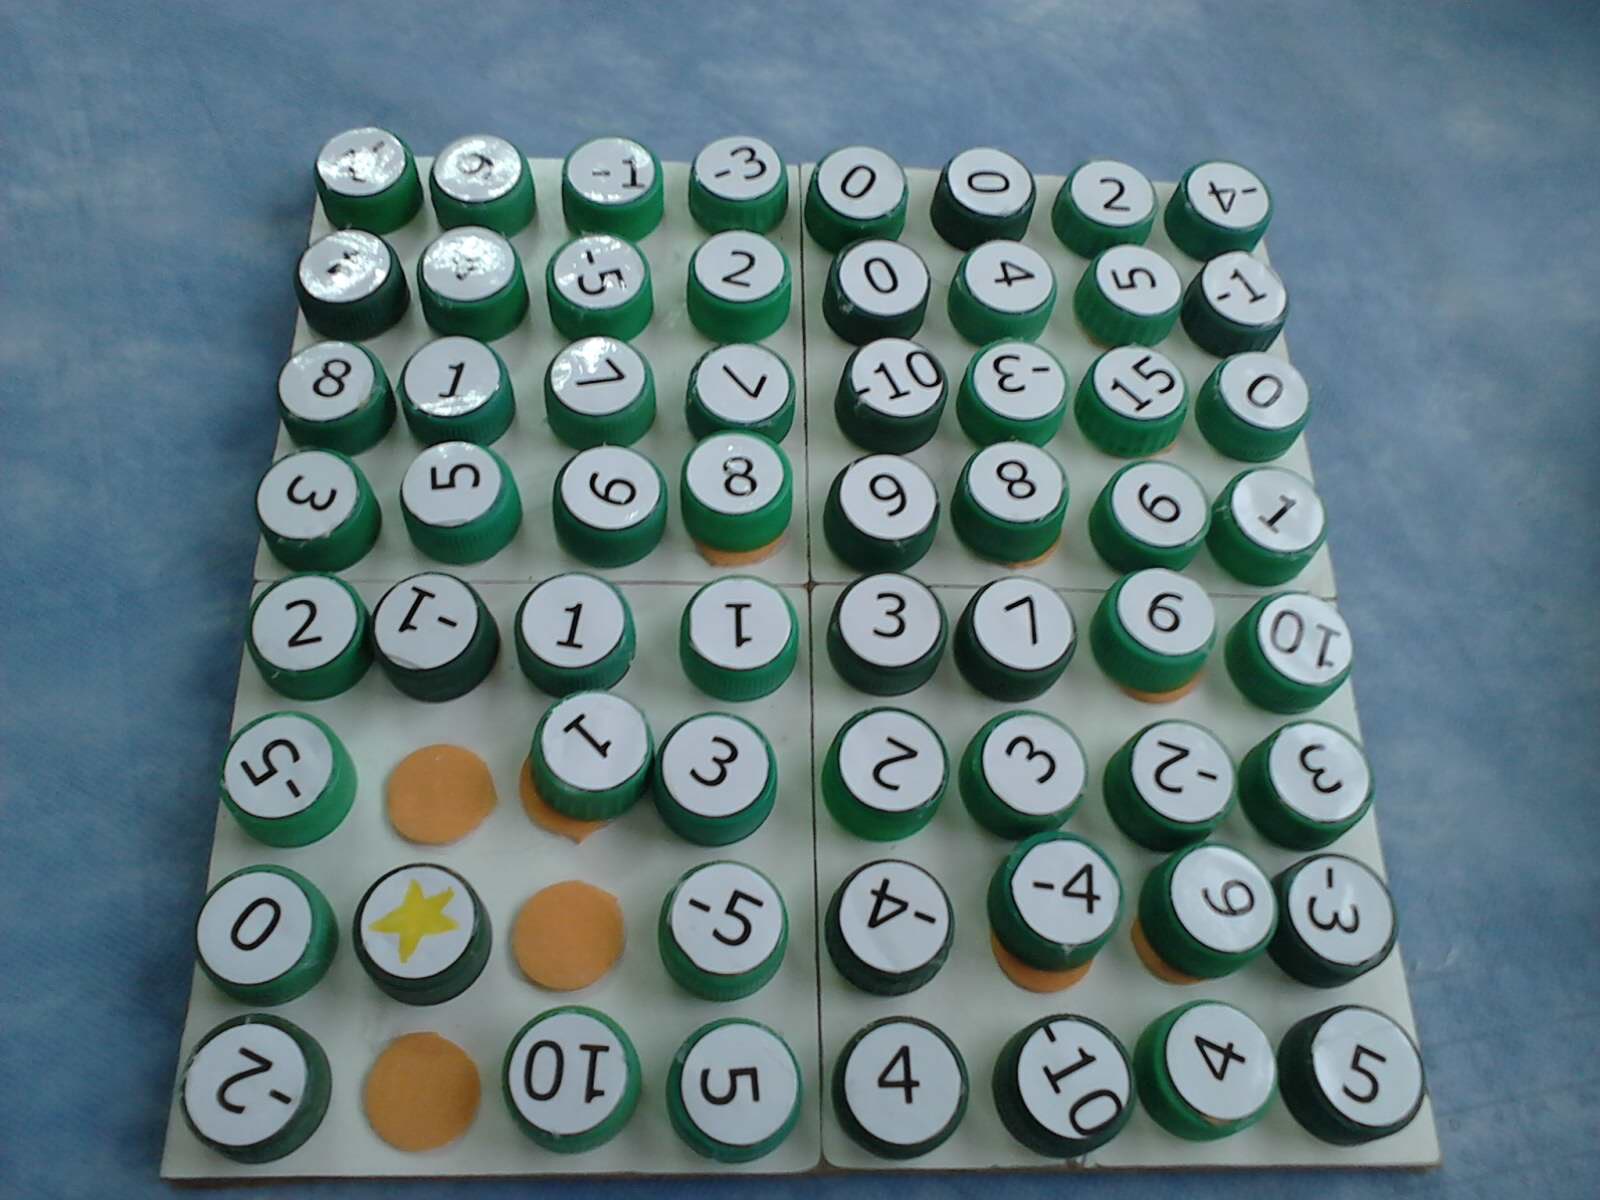 Jogo dos Números. O jogo possui um tabuleiro e 10 peças para identificação  dos números com as quantidades no tabuleiros. Tem o …